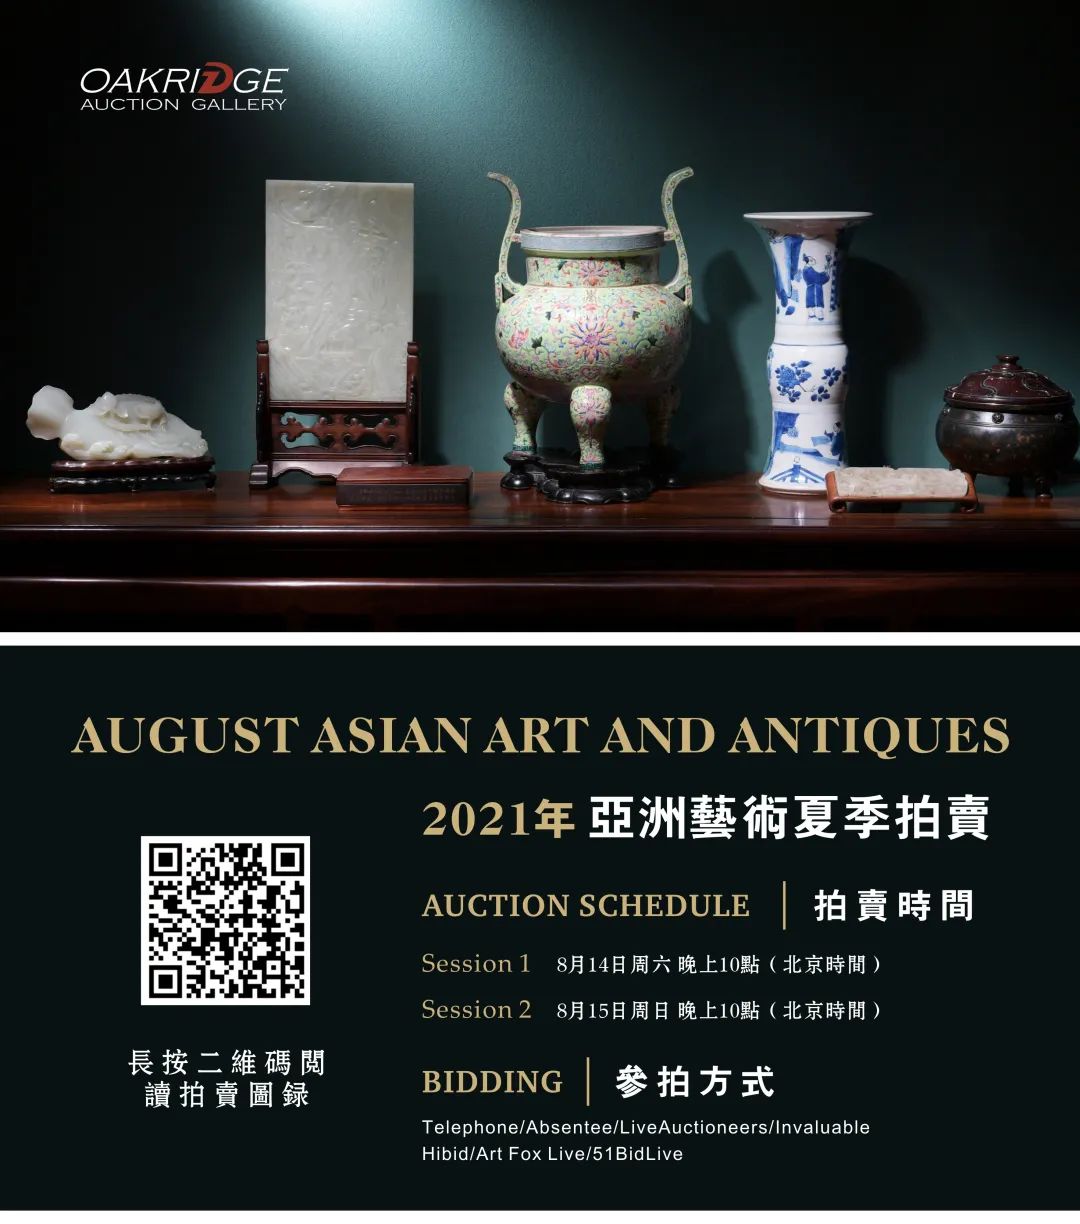 新加坡艺术品拍卖公司 美国奥克里奇亚洲艺术品夏季拍卖8月14日和15日开拍